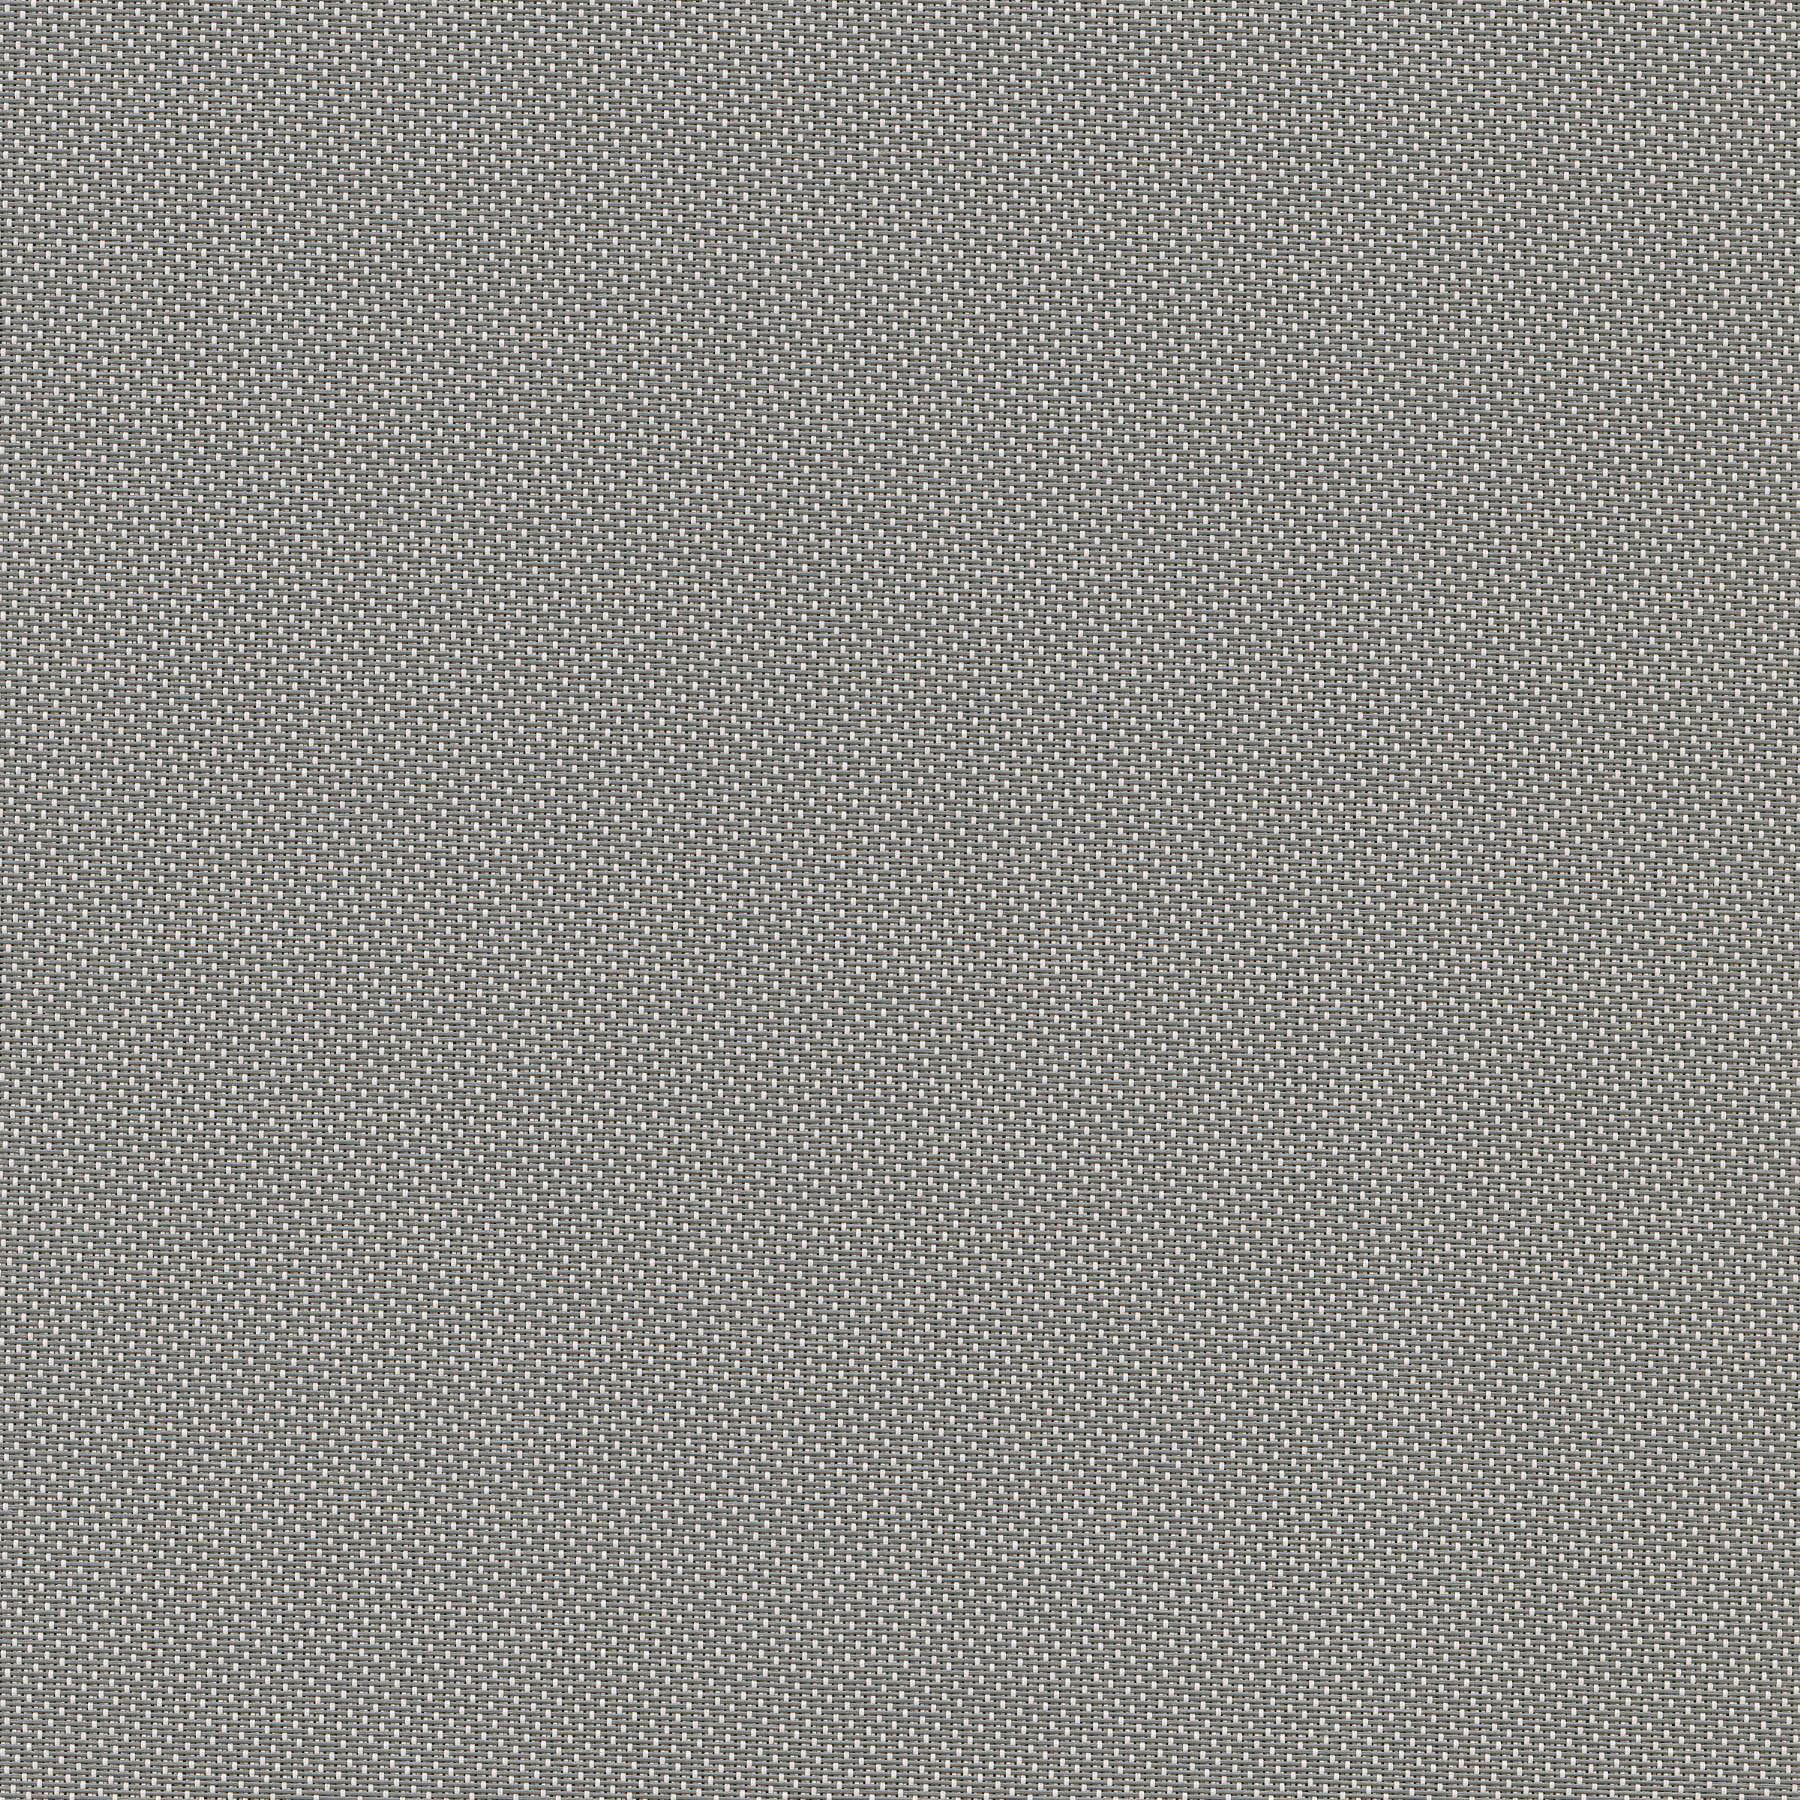 Altex - Fabric - SHEERWEAVE 2705 - Grey/White - 173